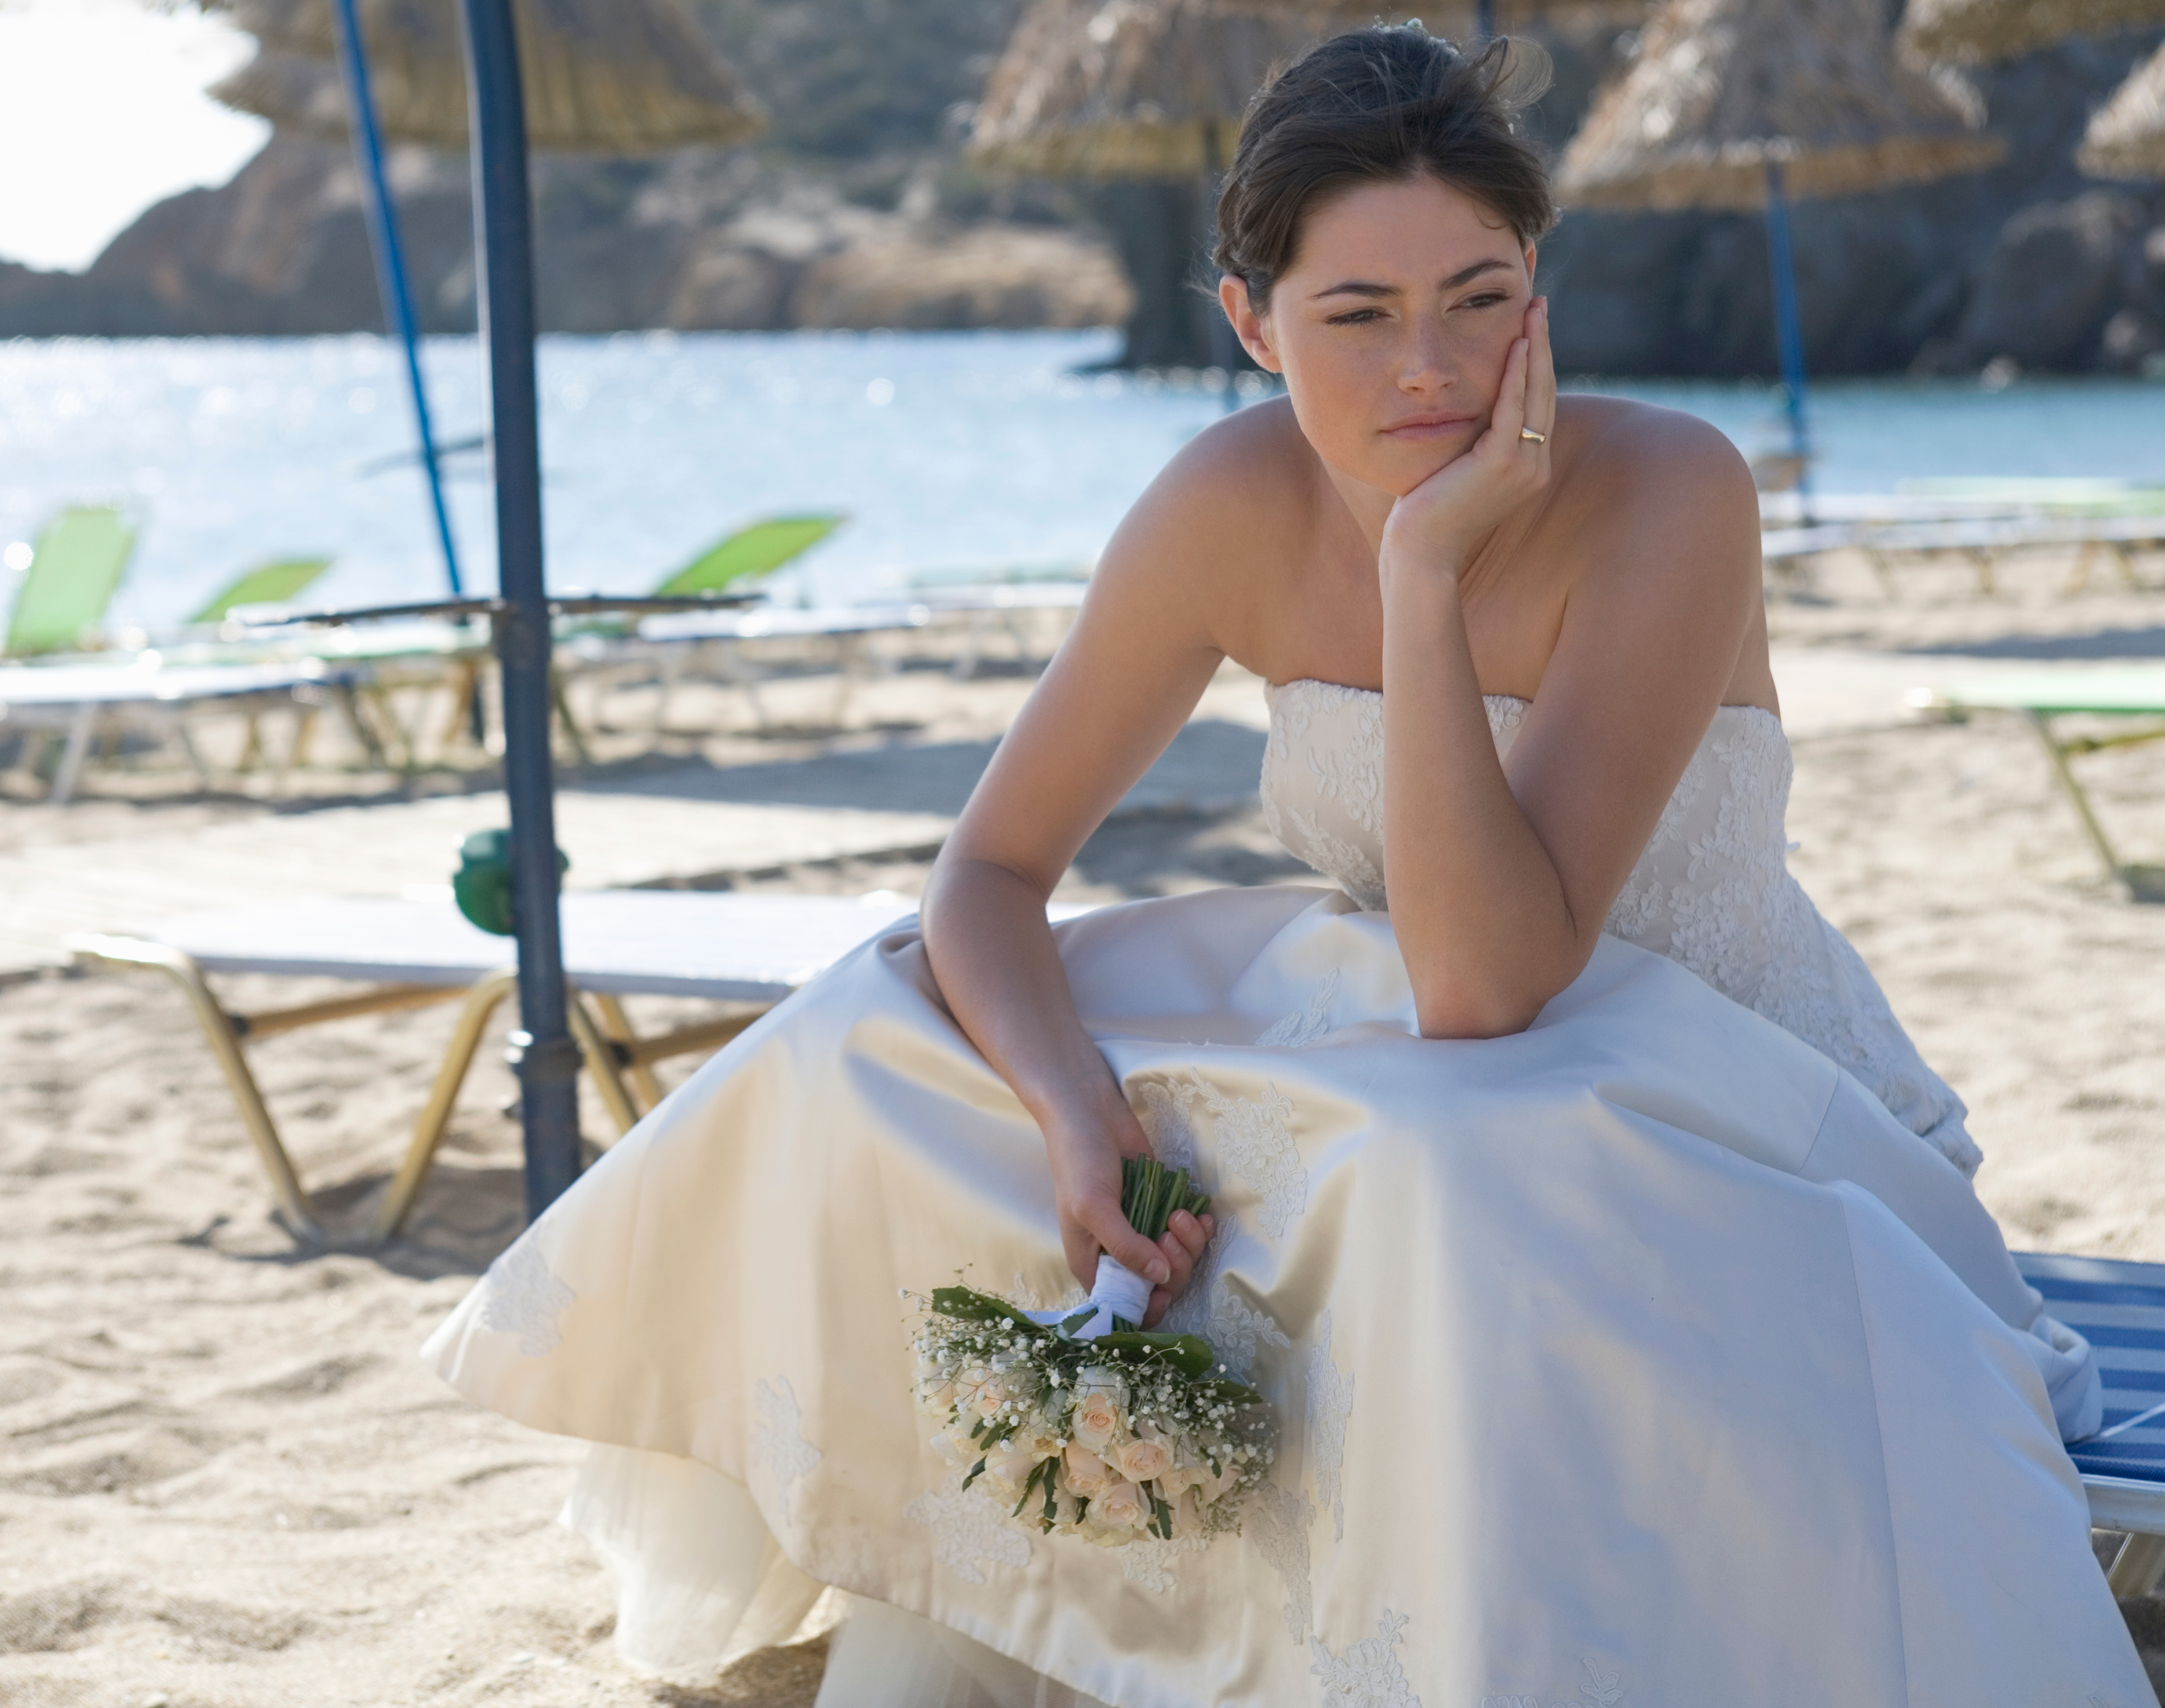 Una novia infeliz aparece sentada en una playa | Foto: Shutterstock